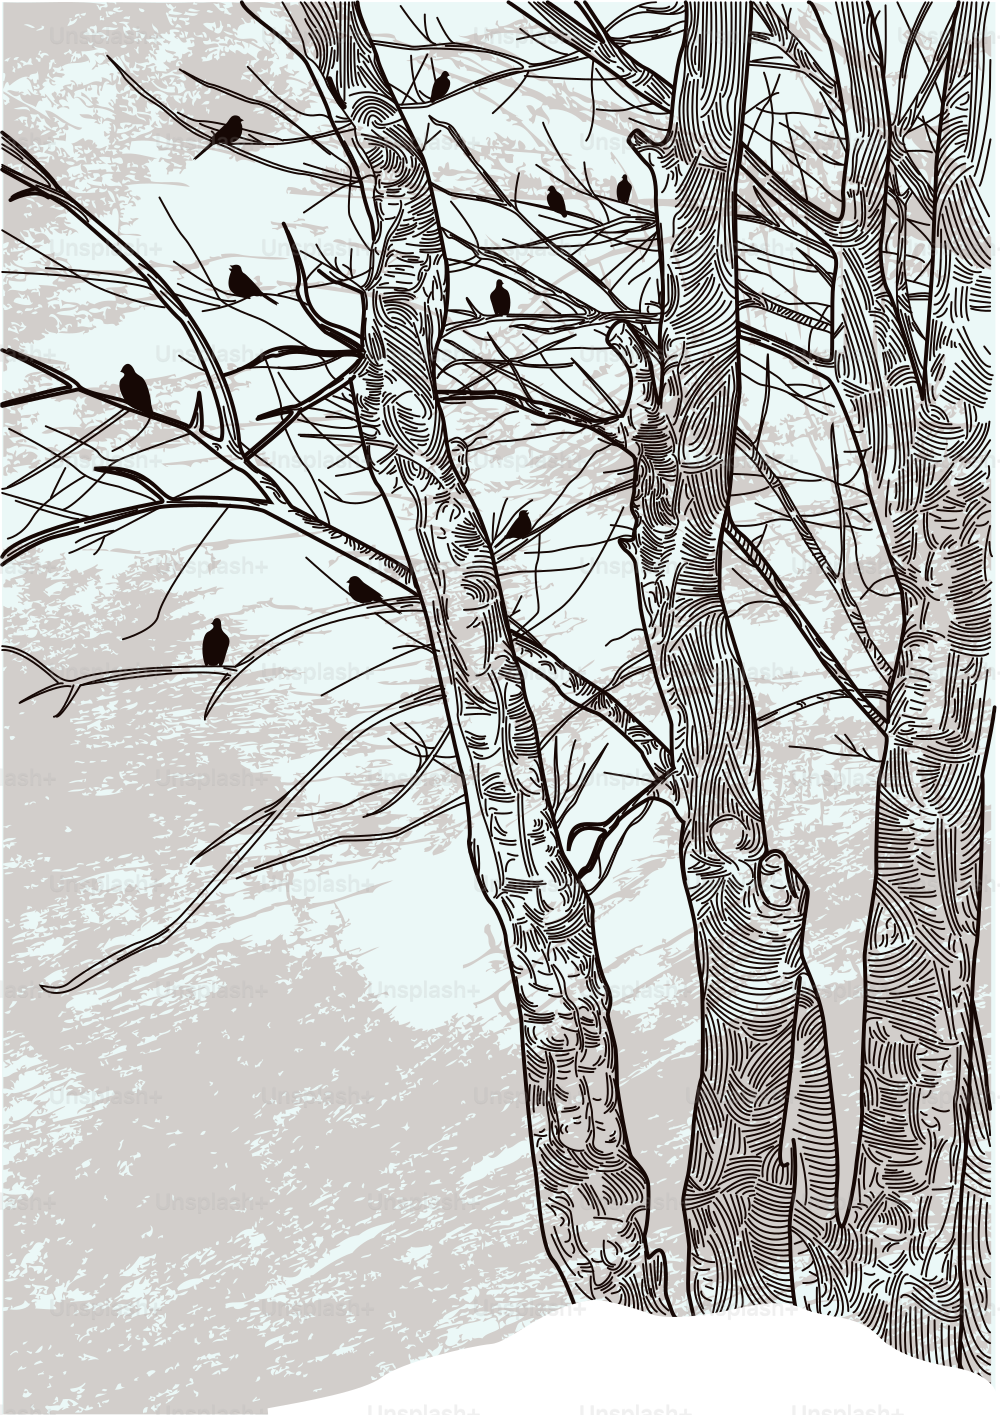 Un'illustrazione aggiornata di alcuni alberi invernali sterili.